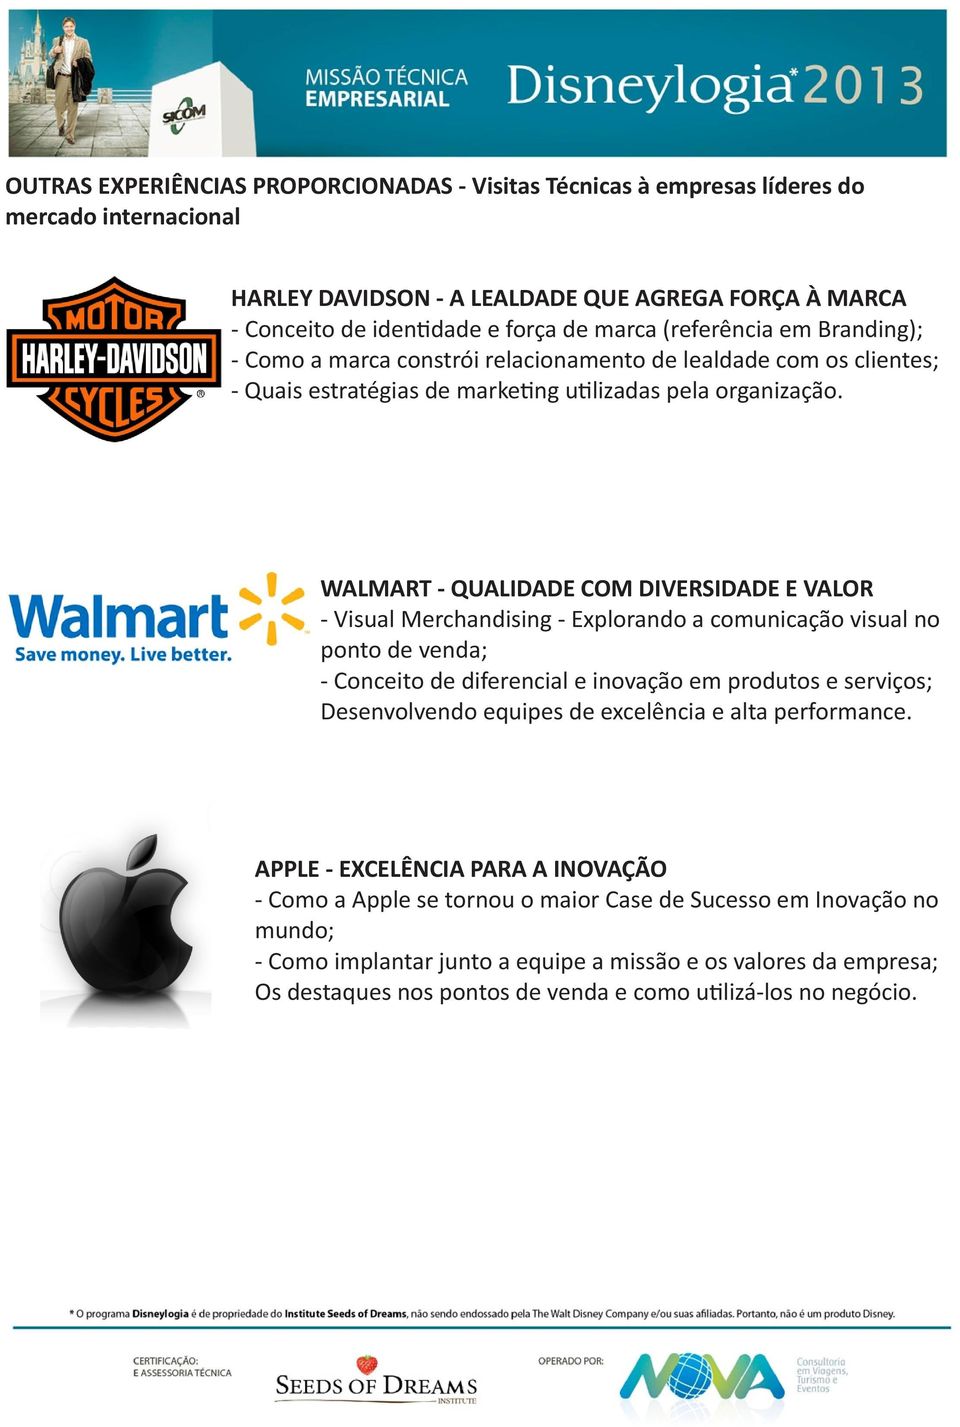 WALMART - QUALIDADE COM DIVERSIDADE E VALOR - Visual Merchandising - Explorando a comunicação visual no ponto de venda; - Conceito de diferencial e inovação em produtos e serviços; Desenvolvendo